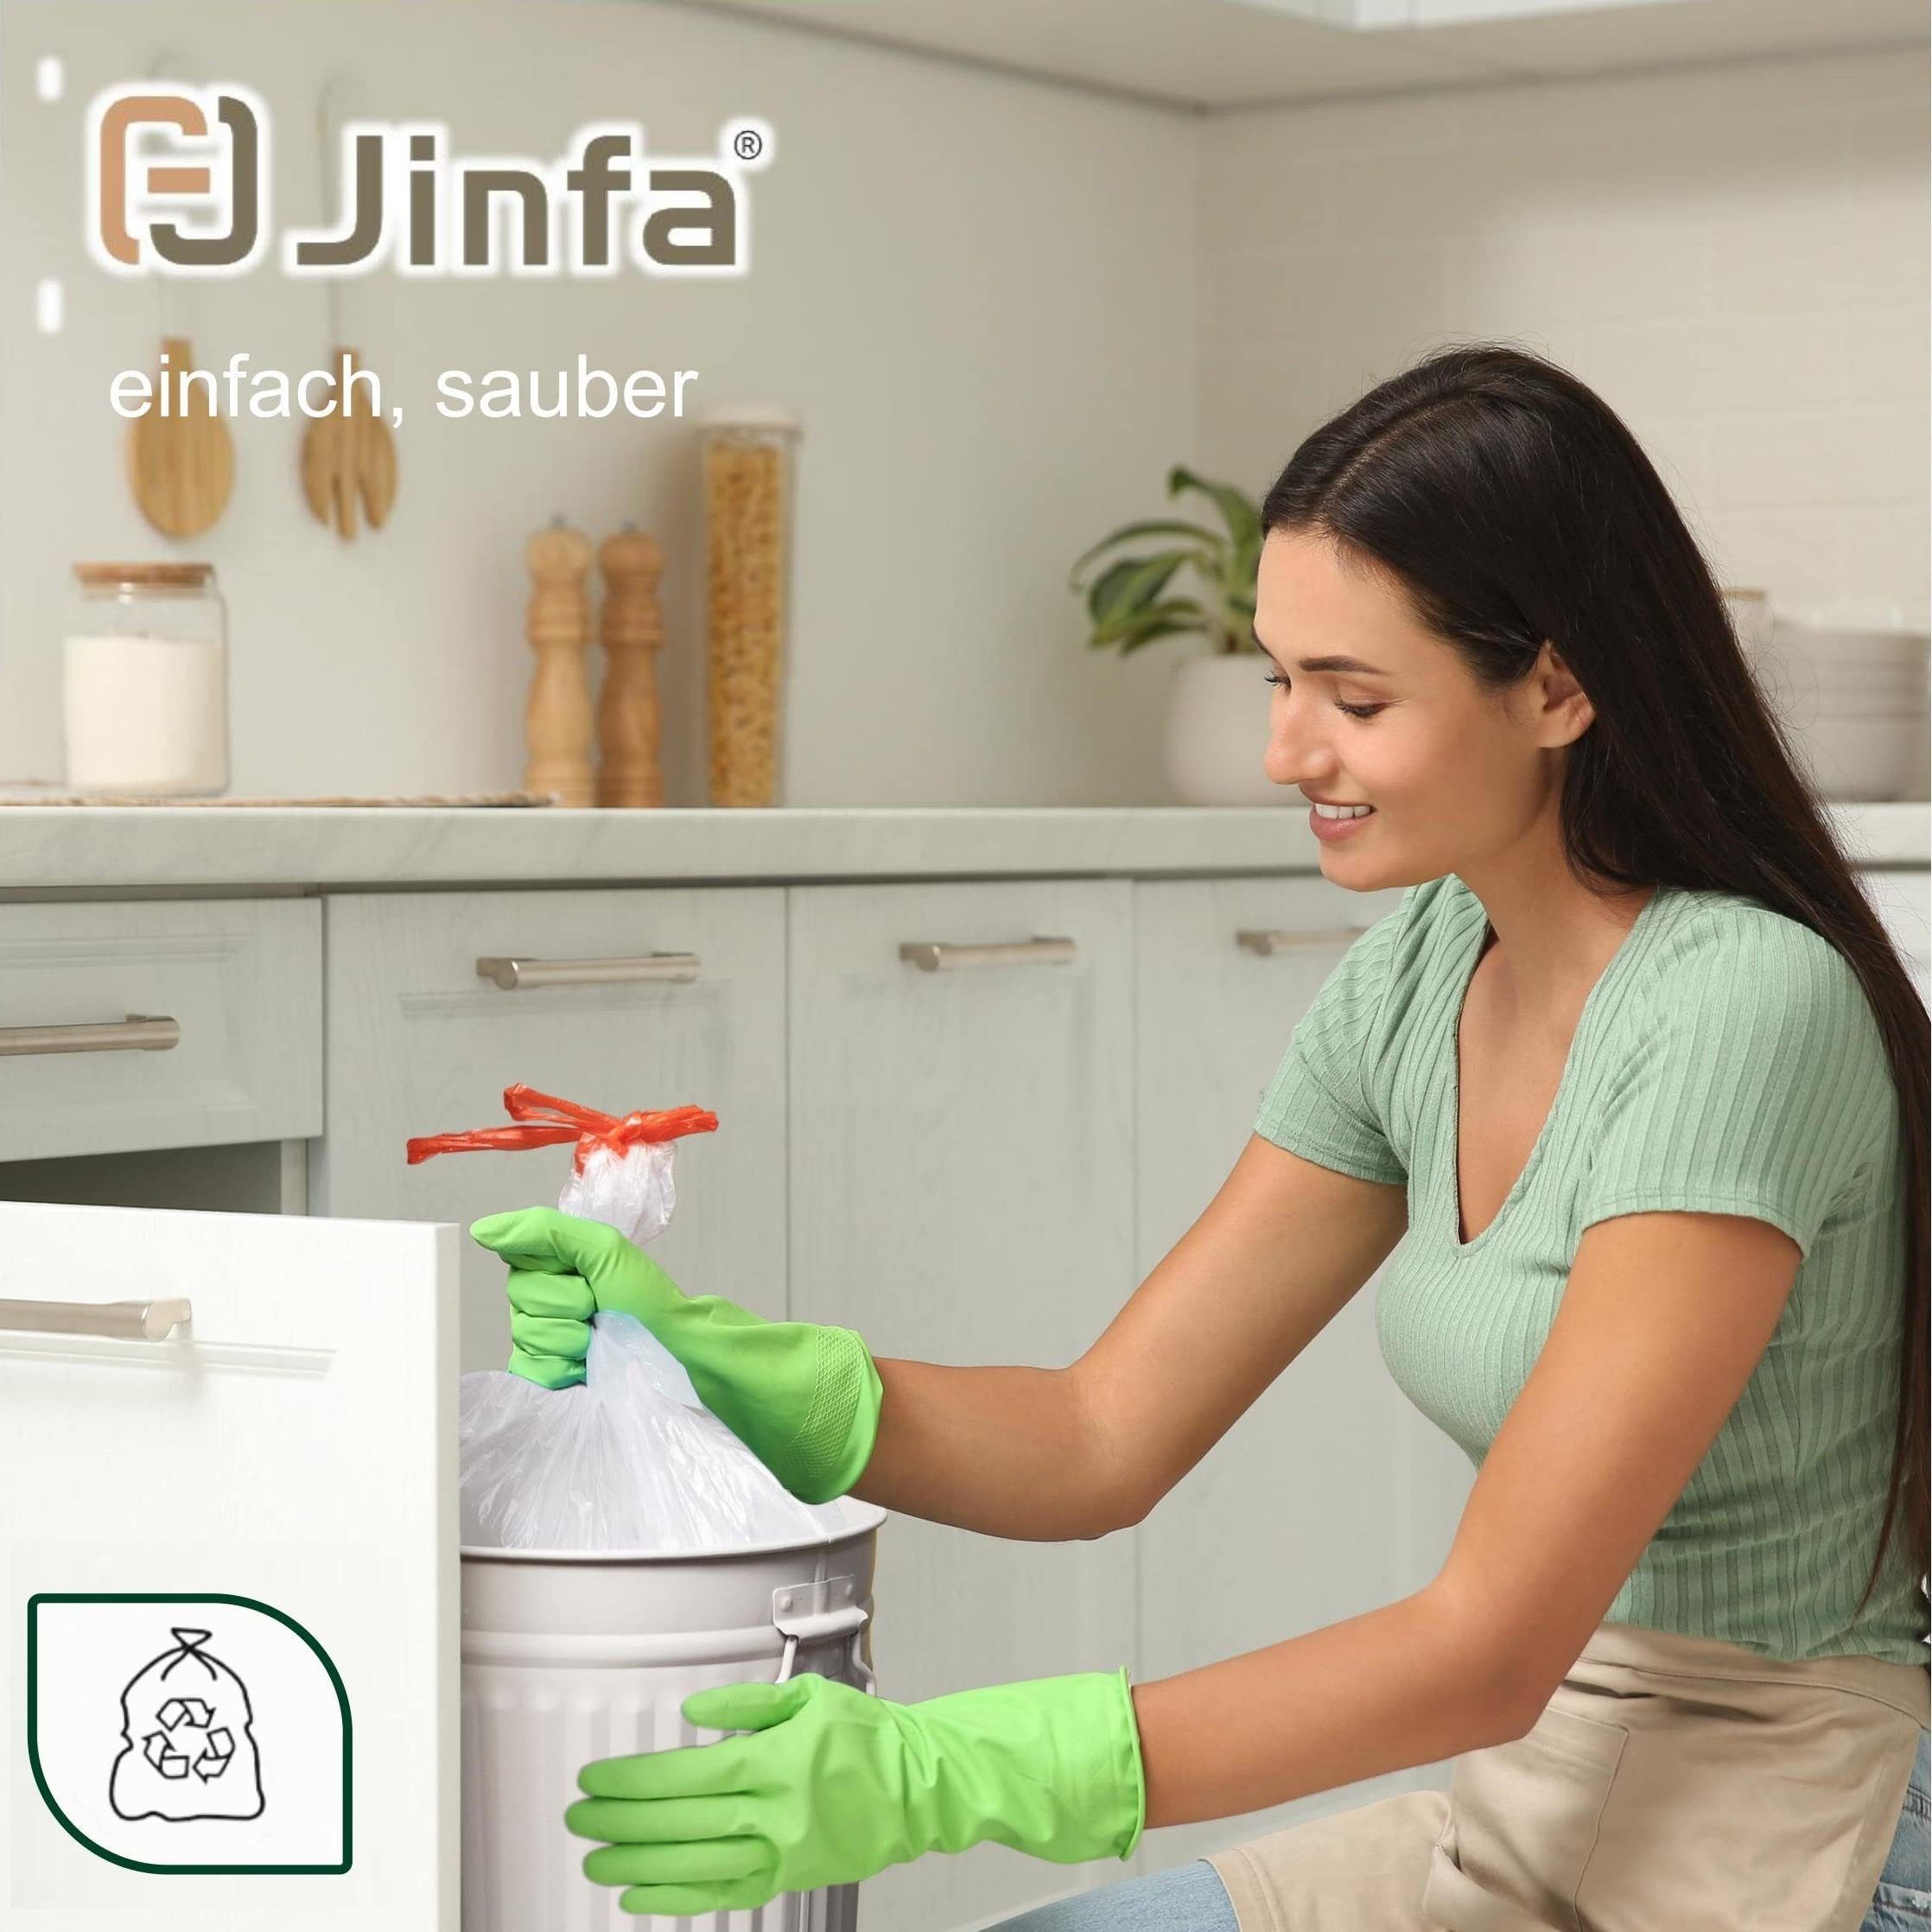 Jinfa Müllbeutel Müllbeutel mit Zugband, Transparent, Für 50 stück Jinfa Metalltonne